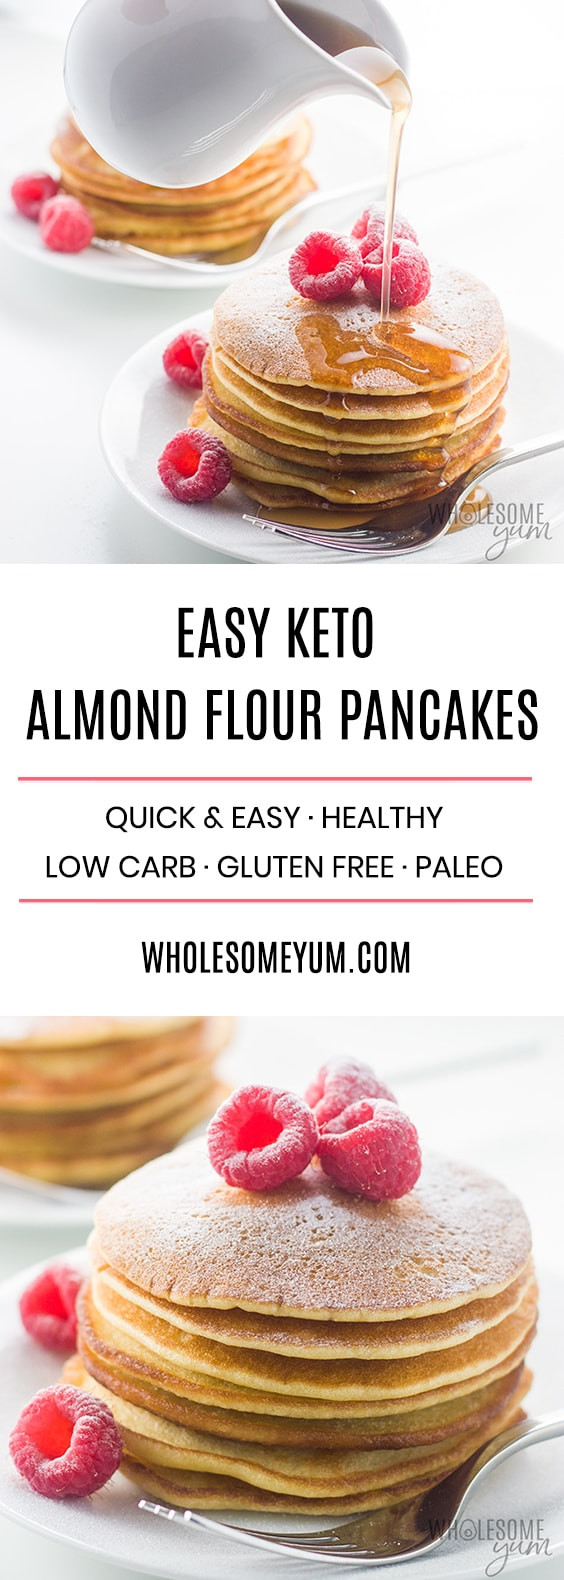 Keto Cupcakes Almond Flour
 Easy Keto Almond Flour Pancakes Recipe